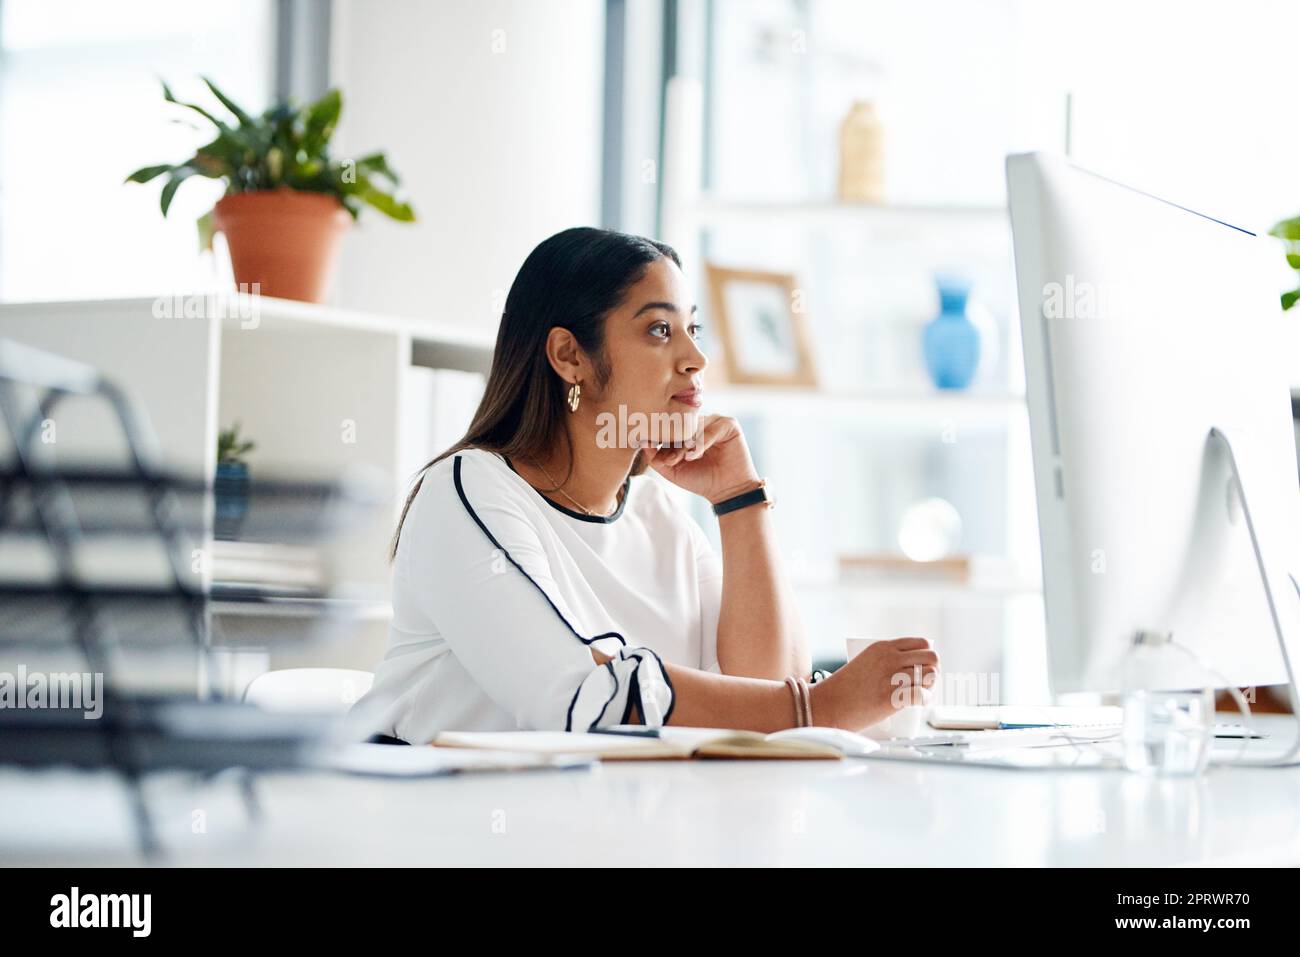 Ihre Ziele mit Hingabe verfolgen. Eine junge Geschäftsfrau, die in einem Büro an einem Computer arbeitet. Stockfoto